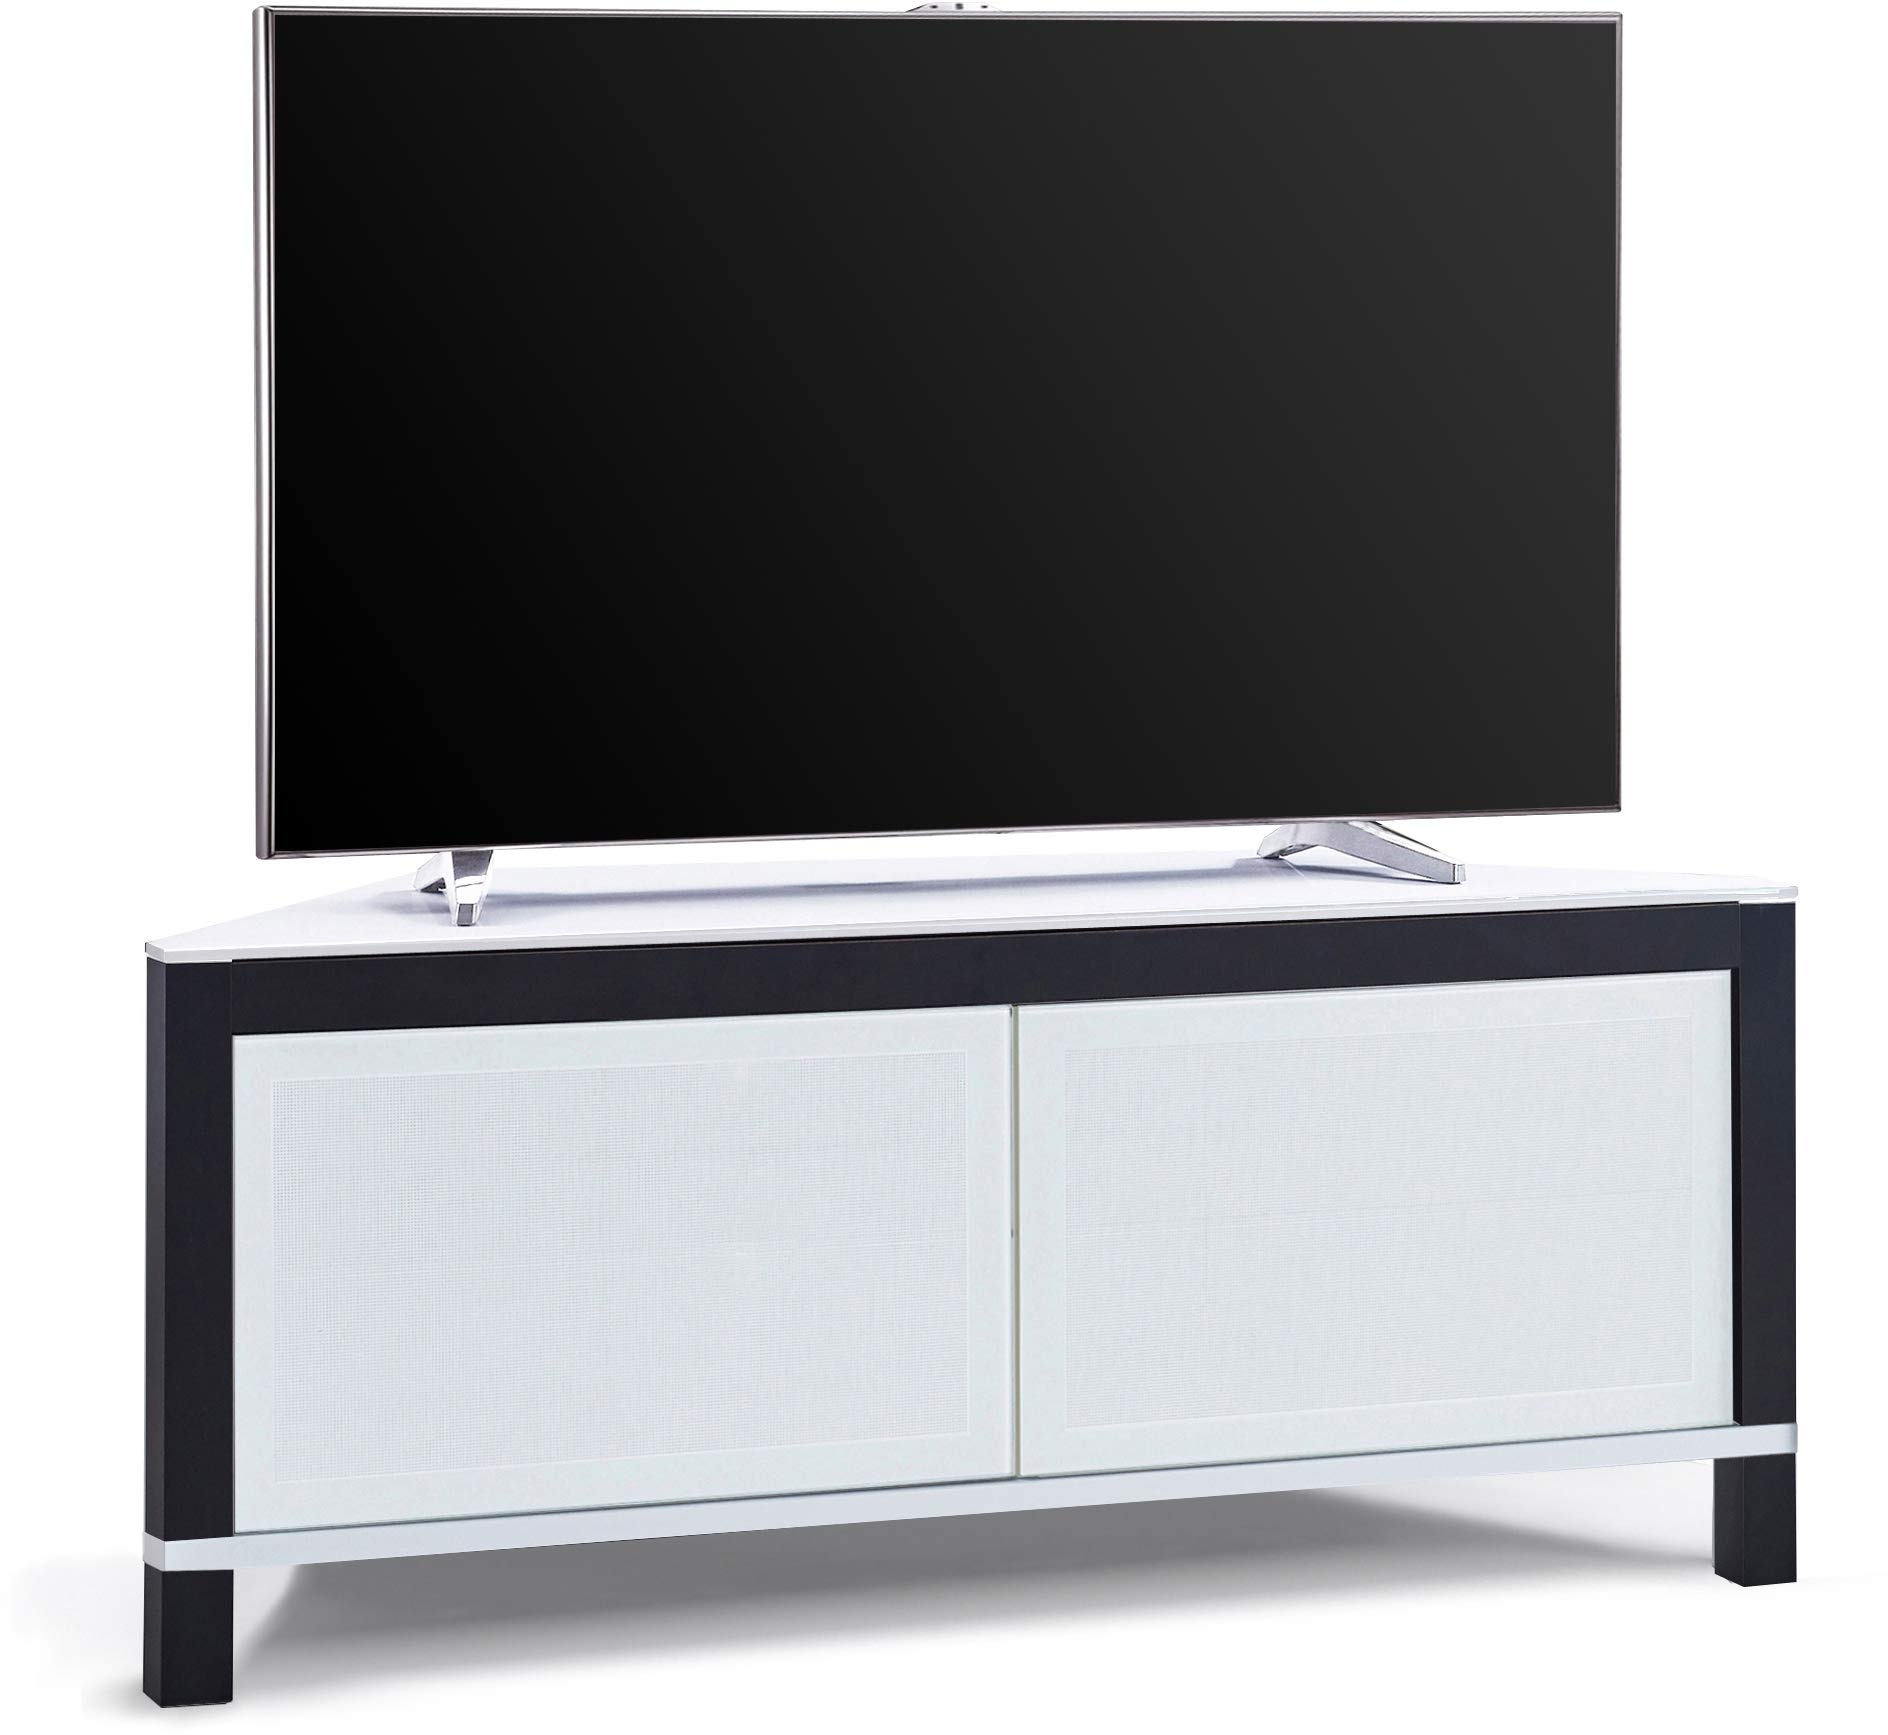 MDA Designs Volans Ferngesteuerter TV-Eckschrank mit 2 Türen, Tru-Corner Glas, bar, Weiß/Schwarz